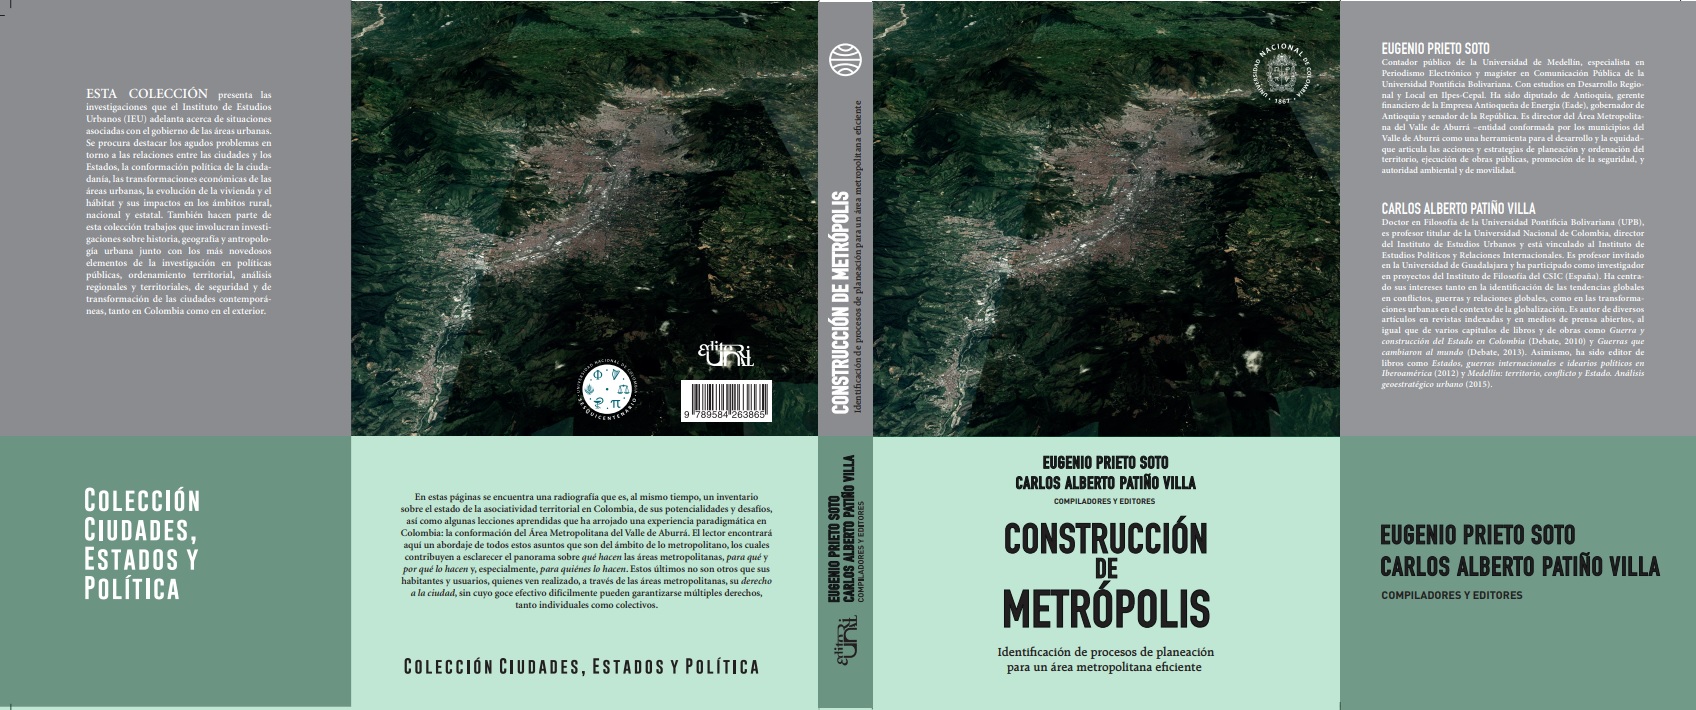 Cubierta libro construcción de Metropolis